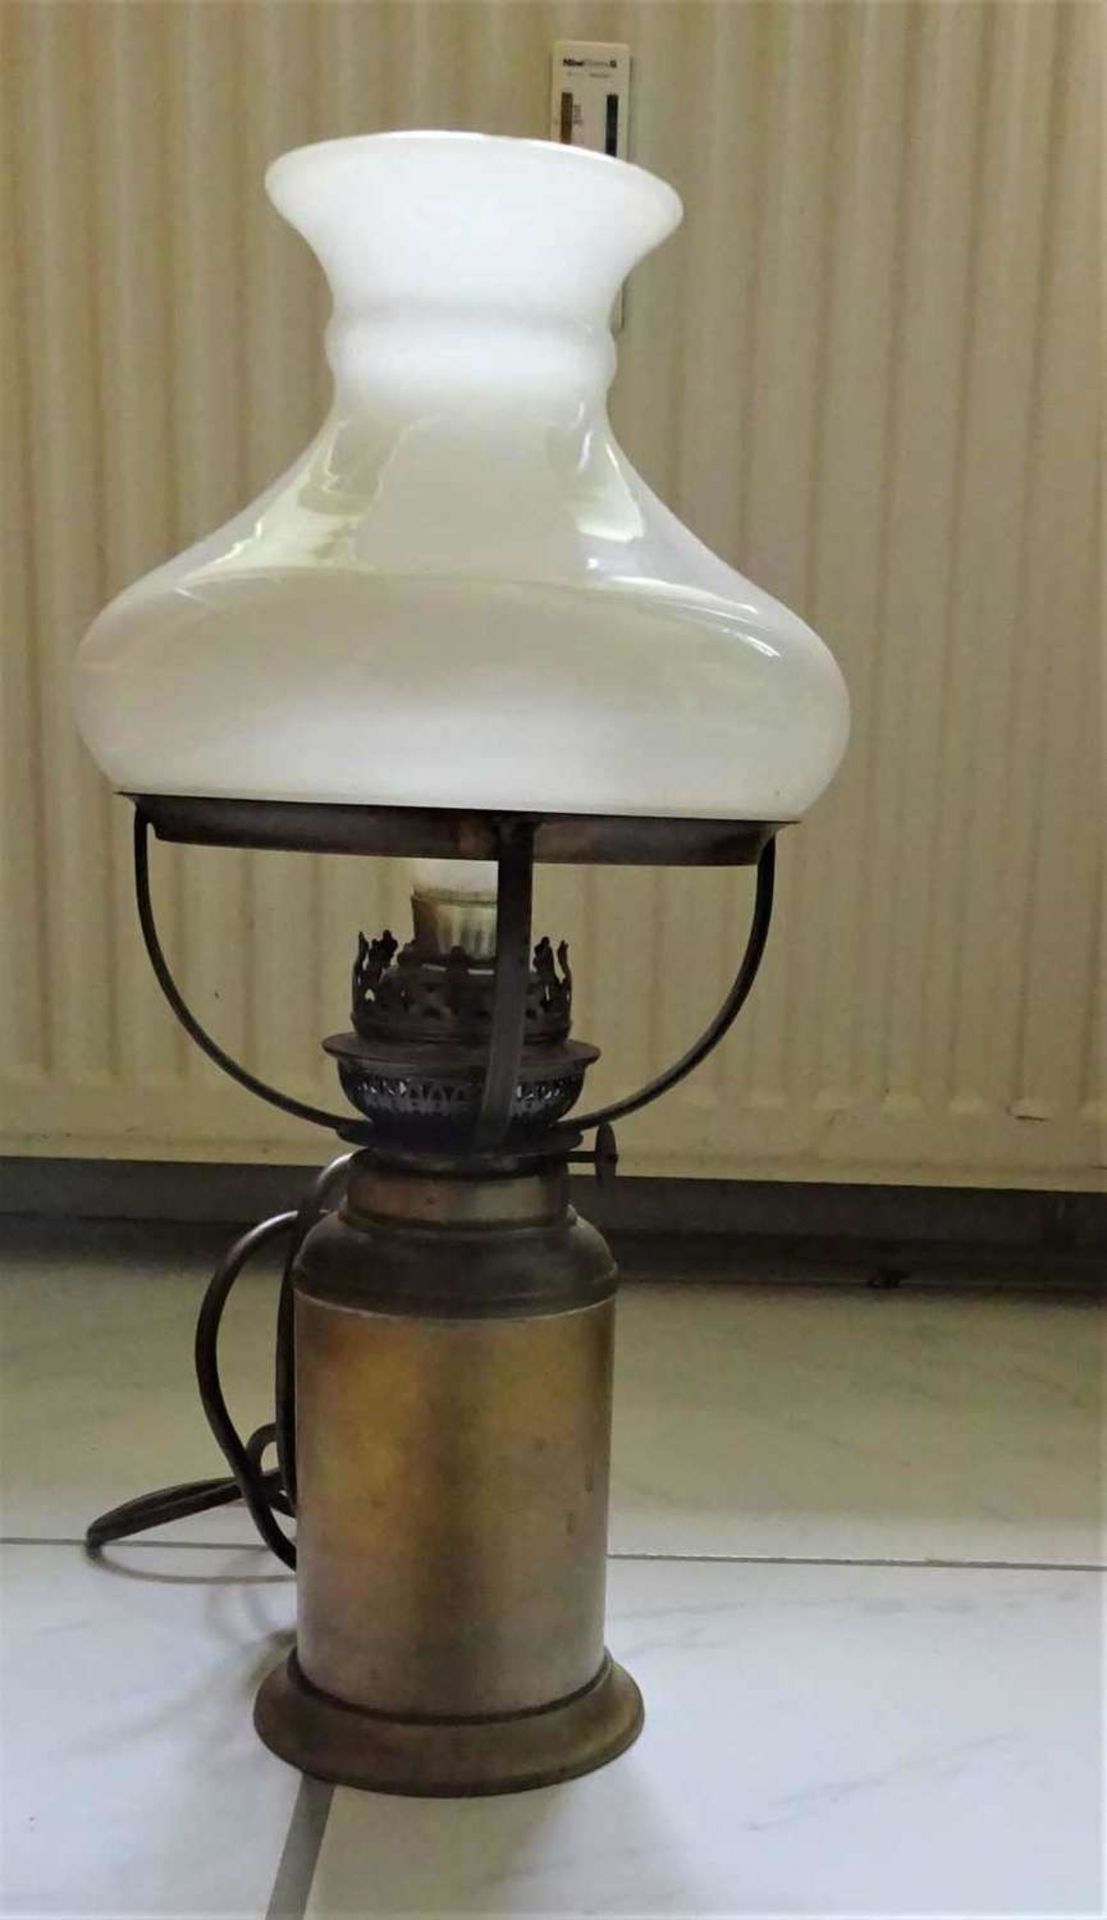 1 Tischlampe mit Kupferfuß und Glasschirm, Funktion nicht geprüft, Höhe ca. 39,5 cm.1 table lamp